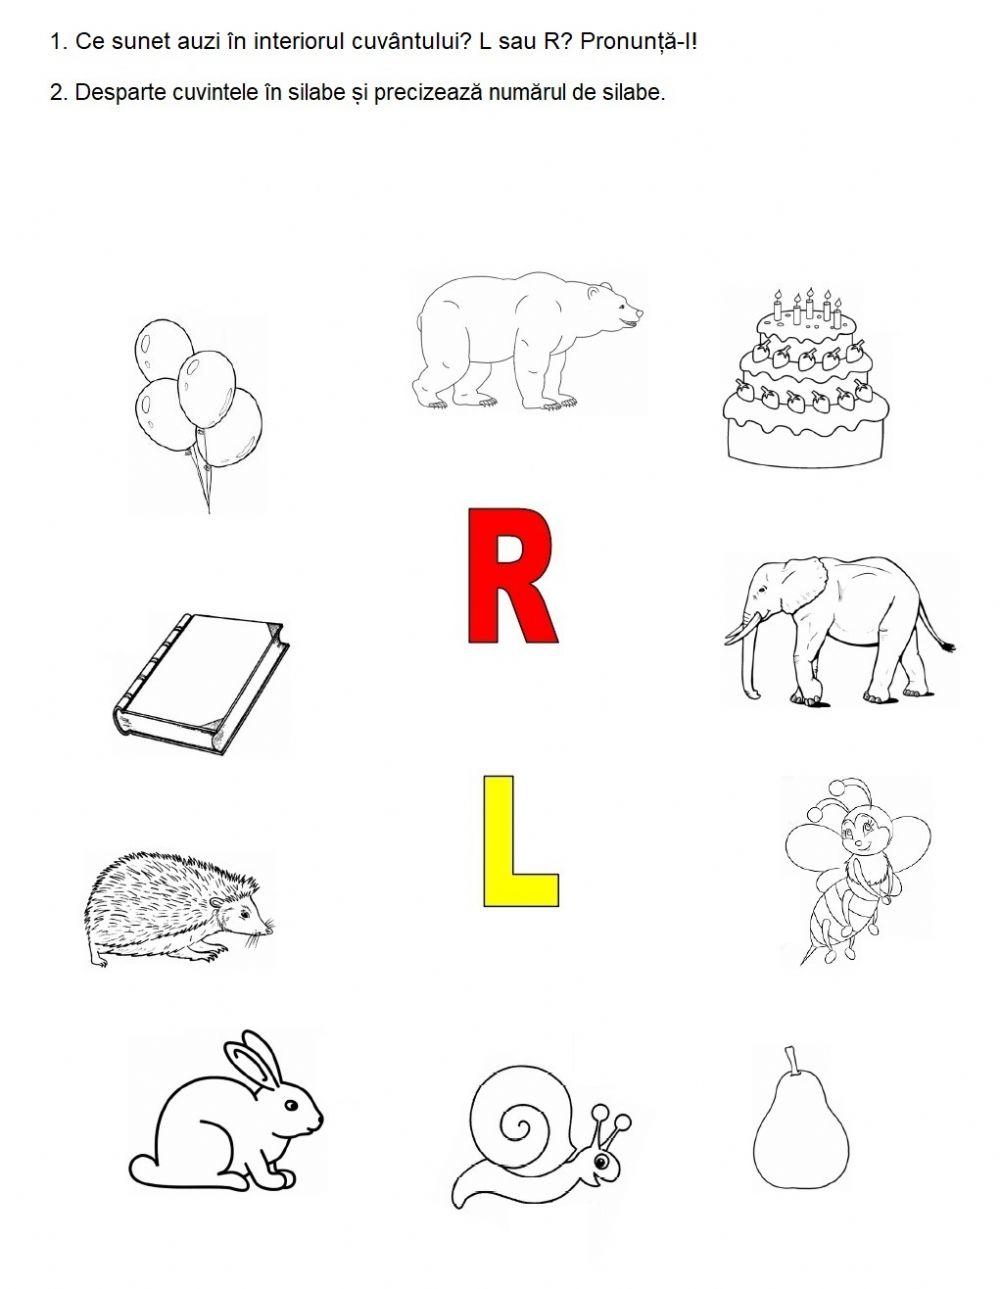 Auzi L sau R în interiorul cuvântului?